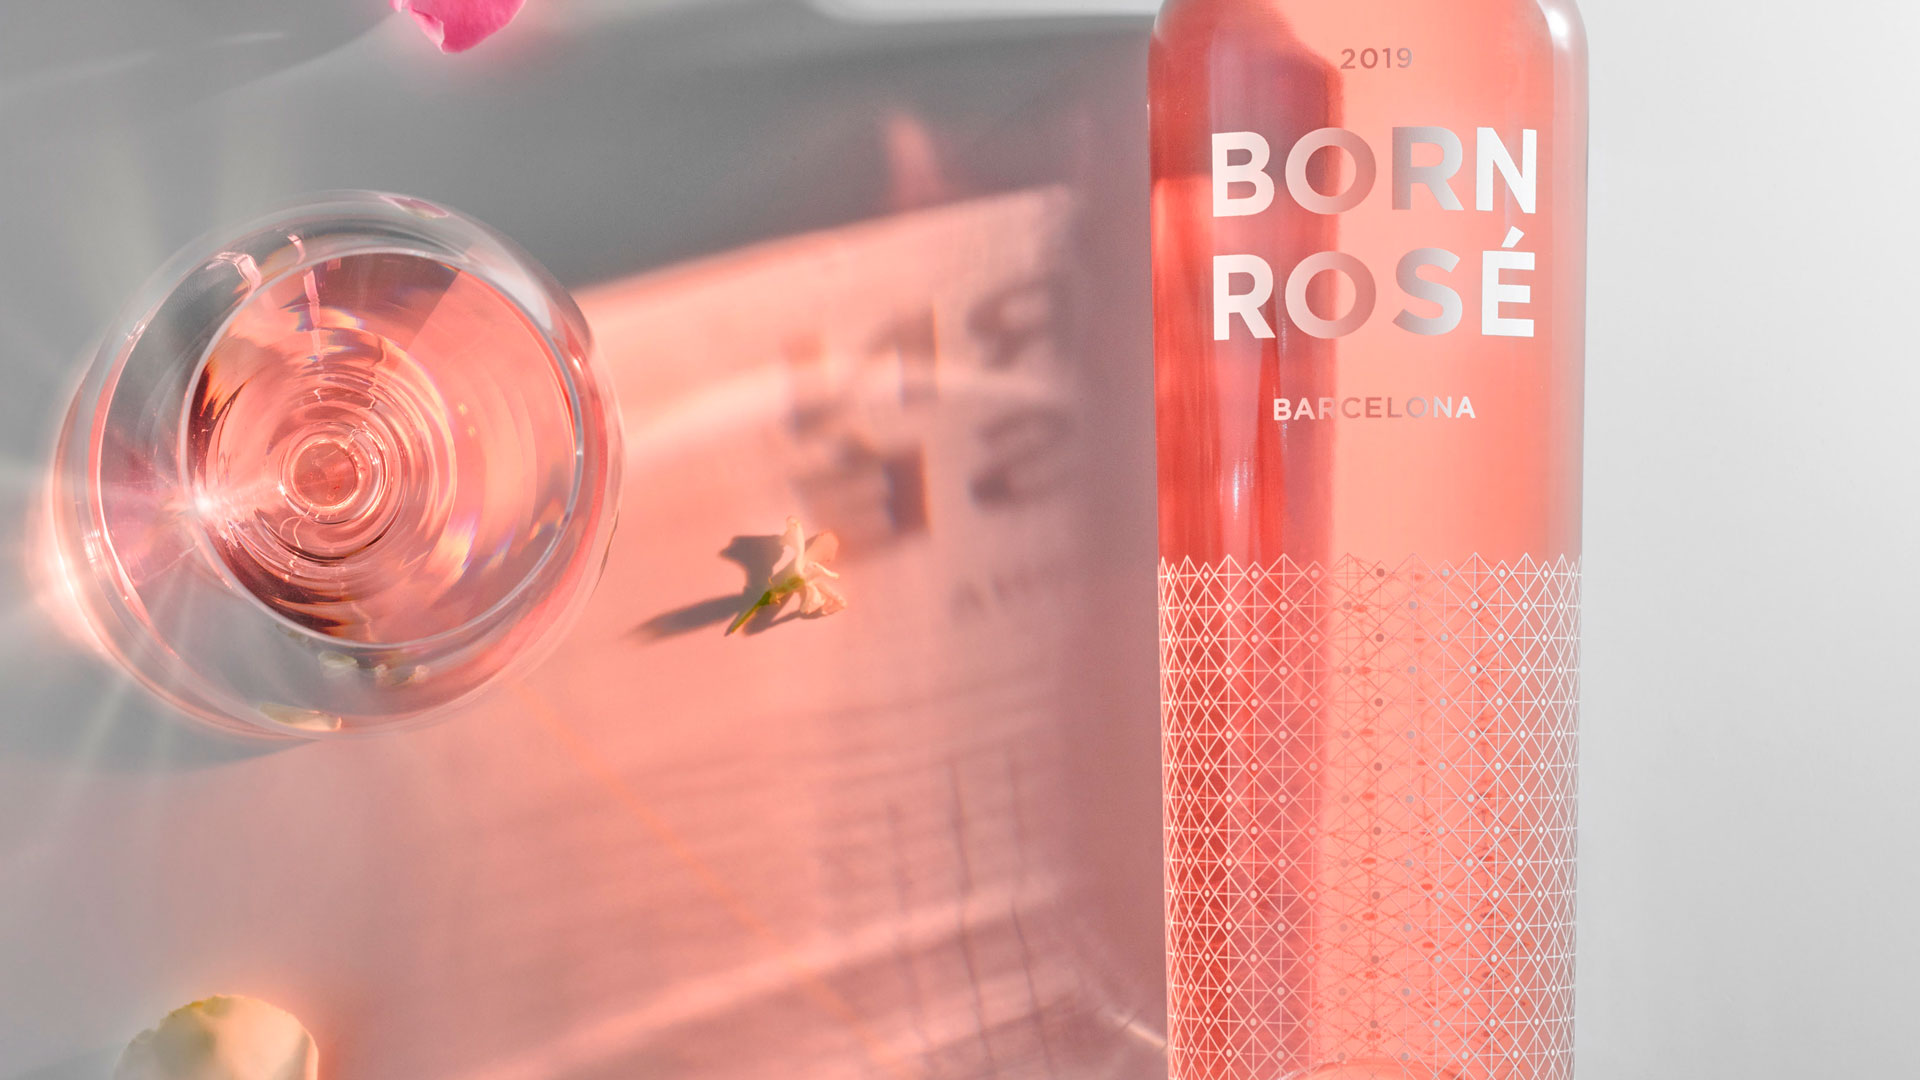 Disfruta la vida en rosa con Born Rosé